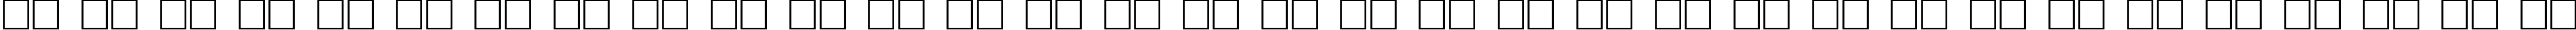 Пример написания русского алфавита шрифтом TitlingCaps